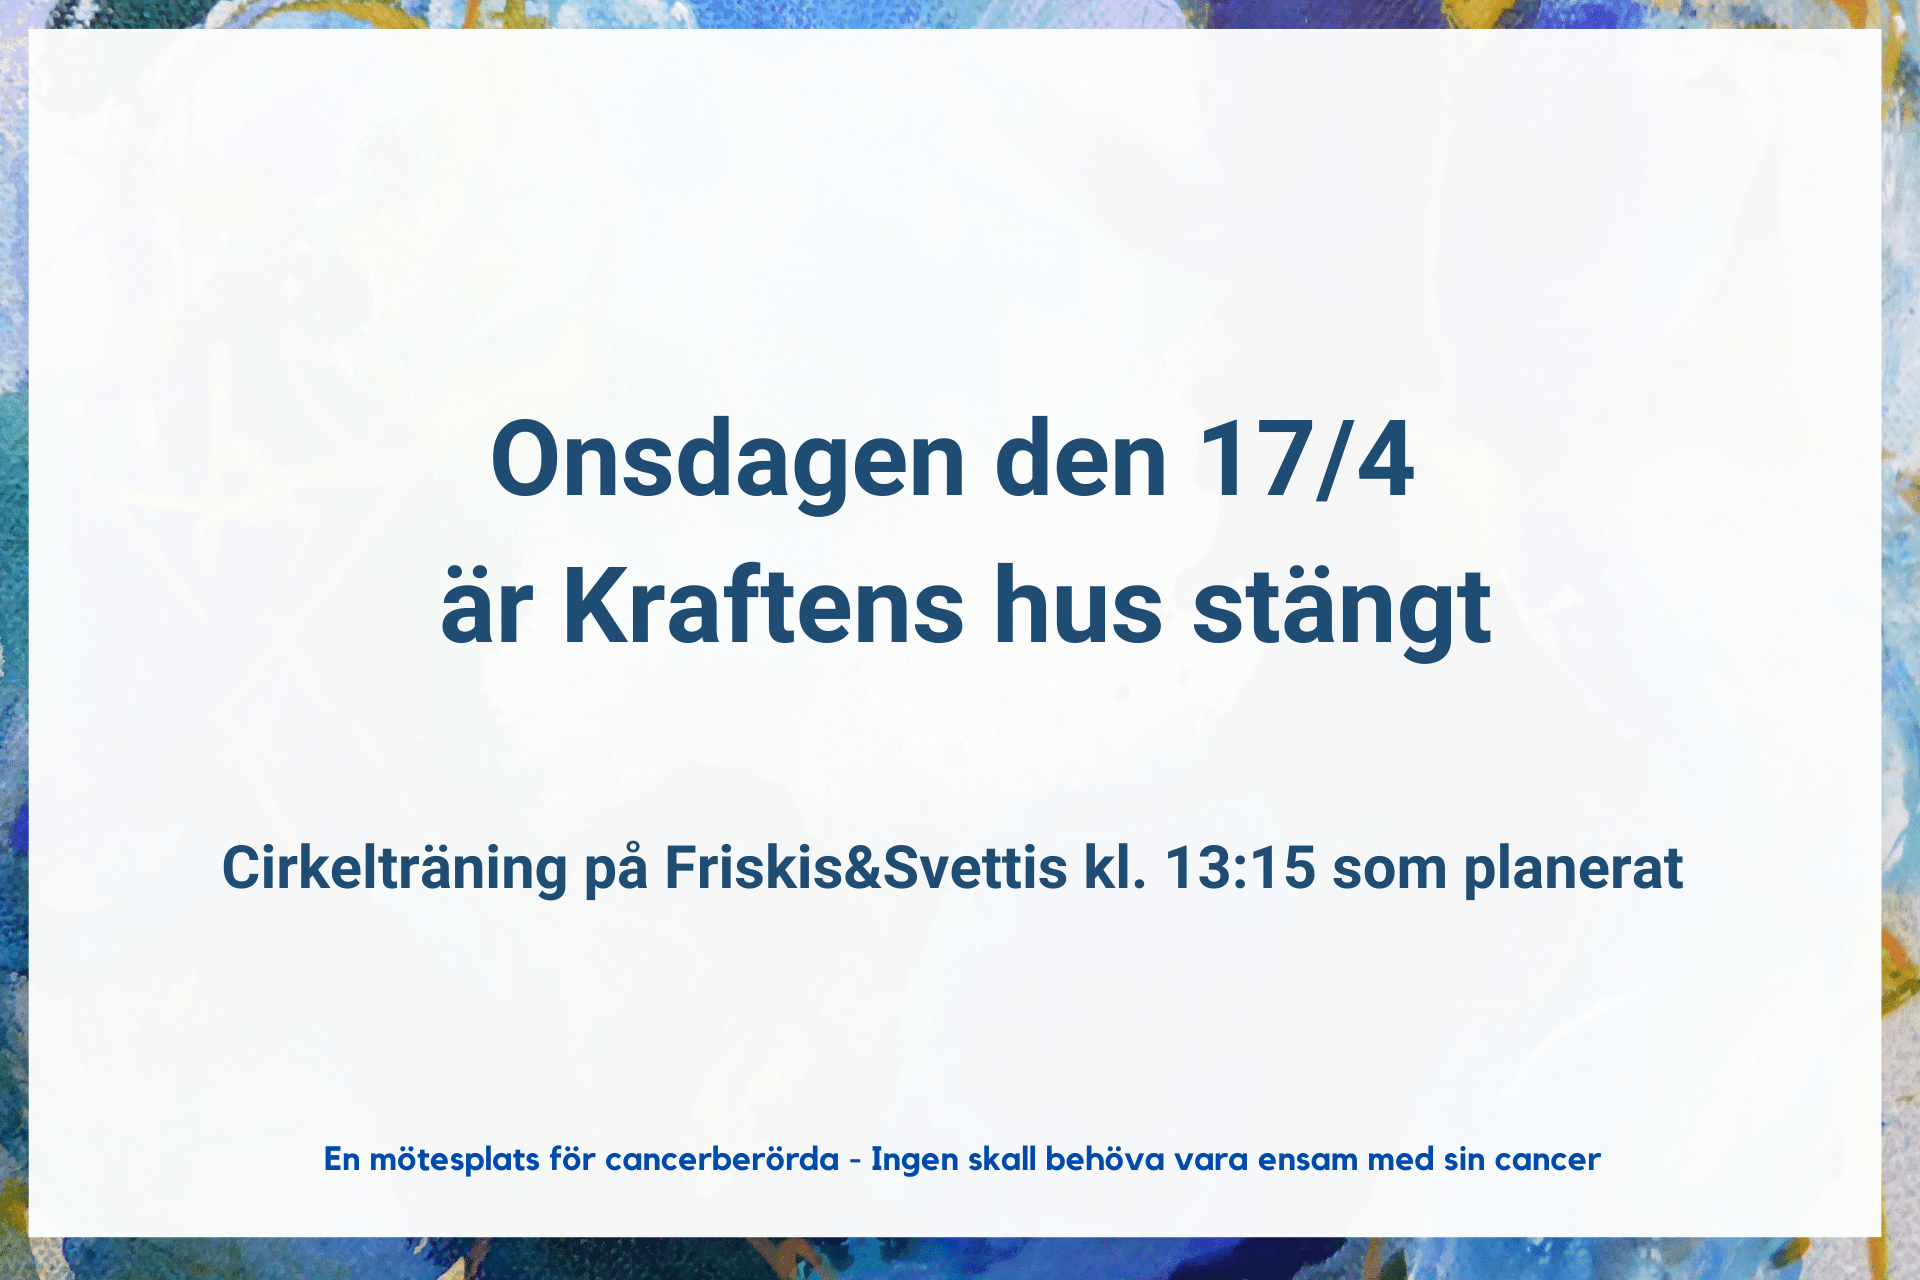 Onsdagen den 17/4 2024 har Kraftens hus stängt. Cirkelträning på Friskis&Svettis kl. 13:15 som planerat.